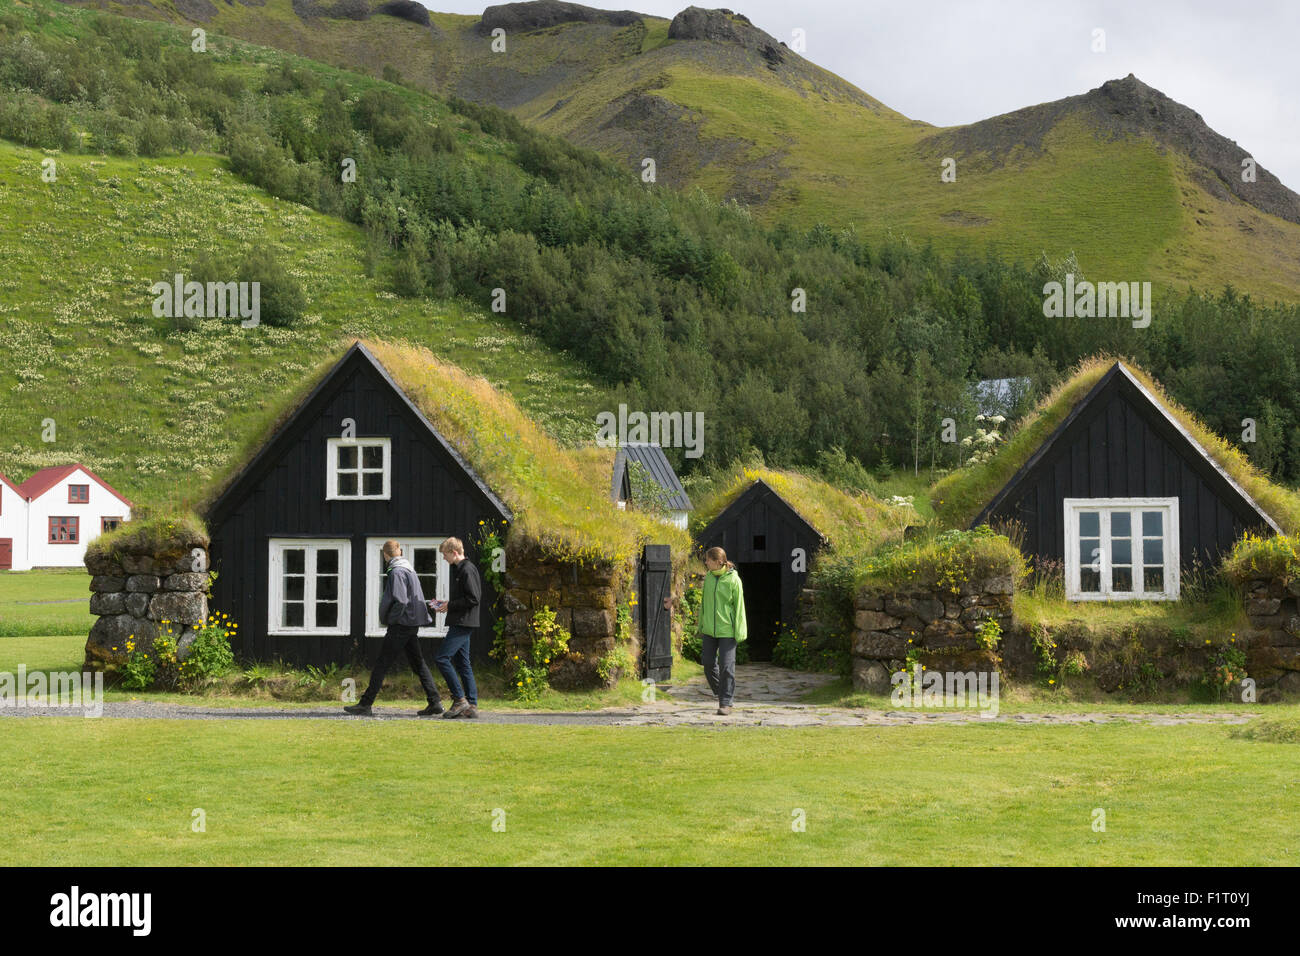 Touristes marchant parmi les maisons de gazon traditionnelles, ou torfbæir en islandais, au Skógarsafn - Musée régional de Skogar en Islande Banque D'Images